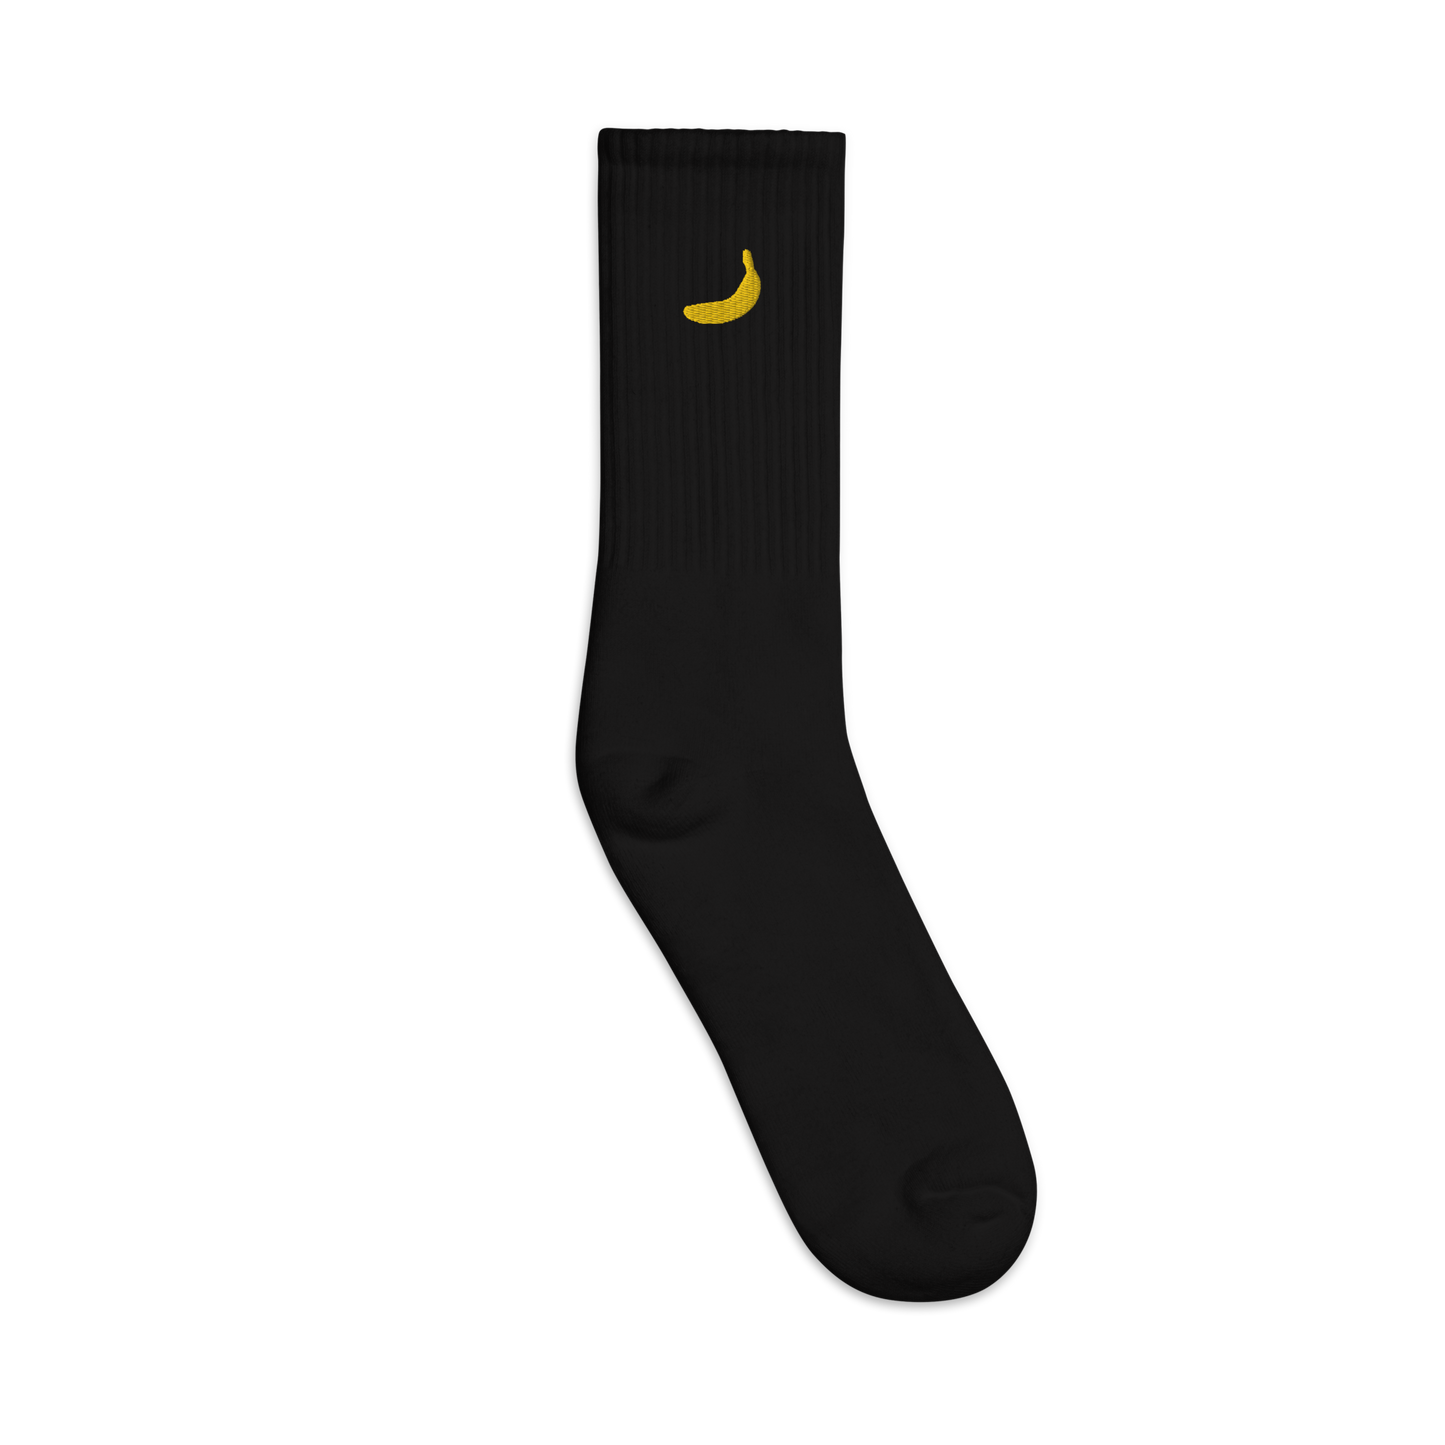 Banana - Embroidered socks